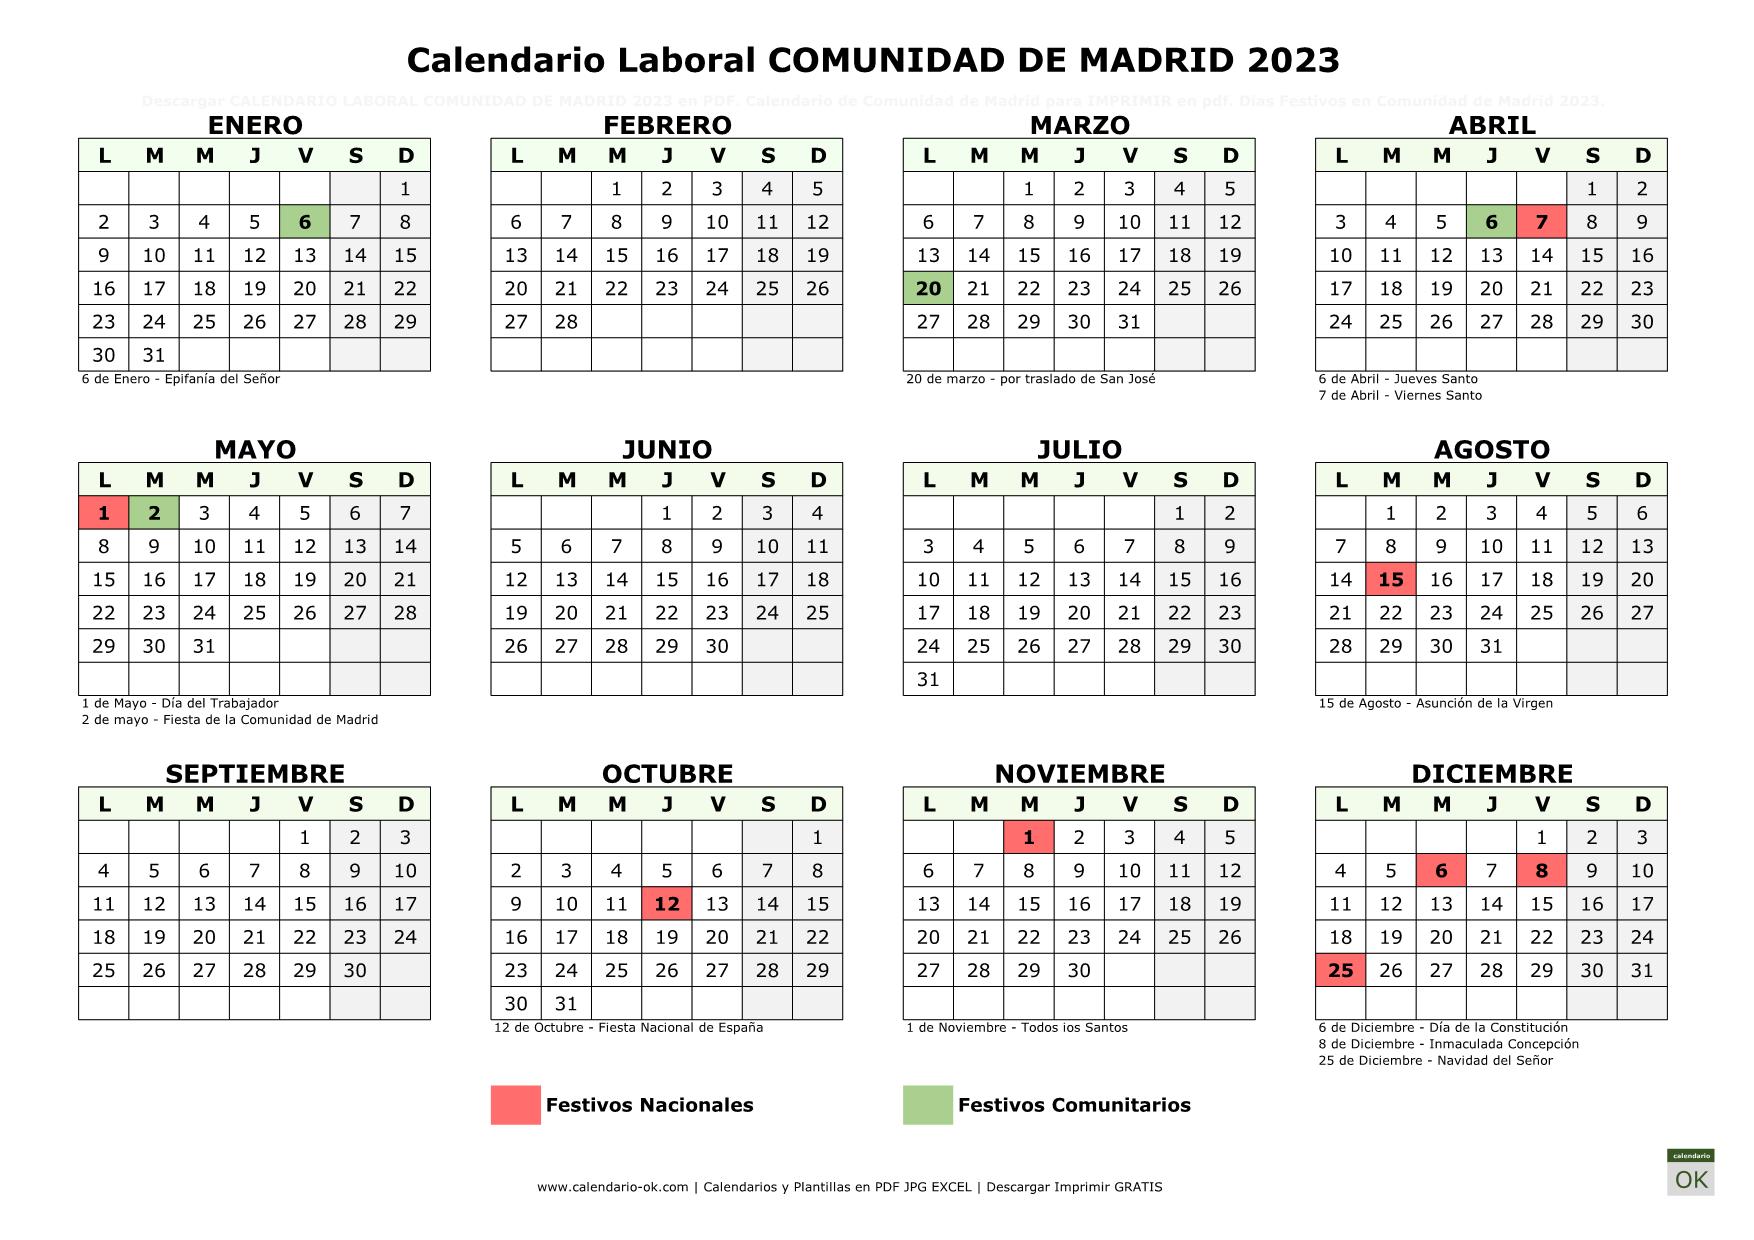 Calendario Laboral COMUNIDAD DE MADRID 2023 horizontal